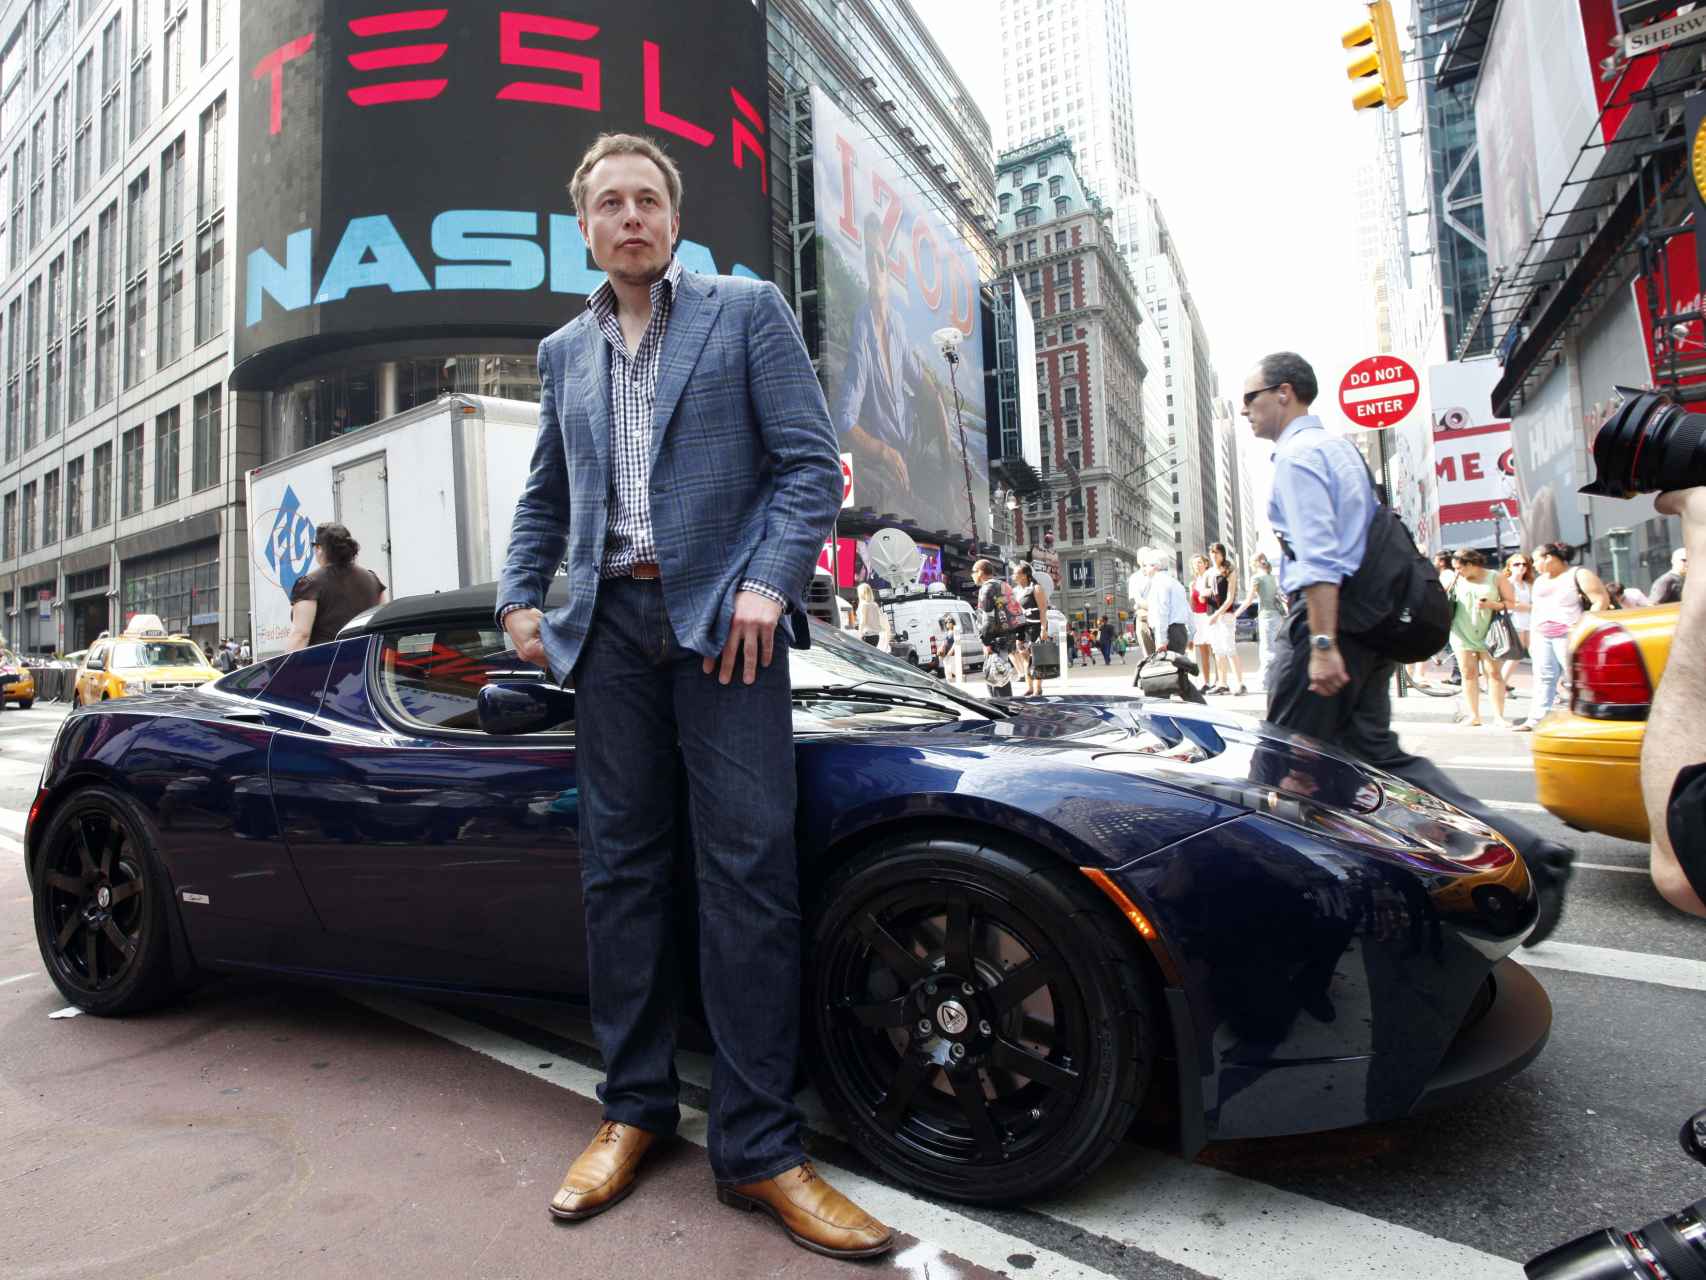 El empresario junto a uno de sus coches de lujo posando para la prensa.